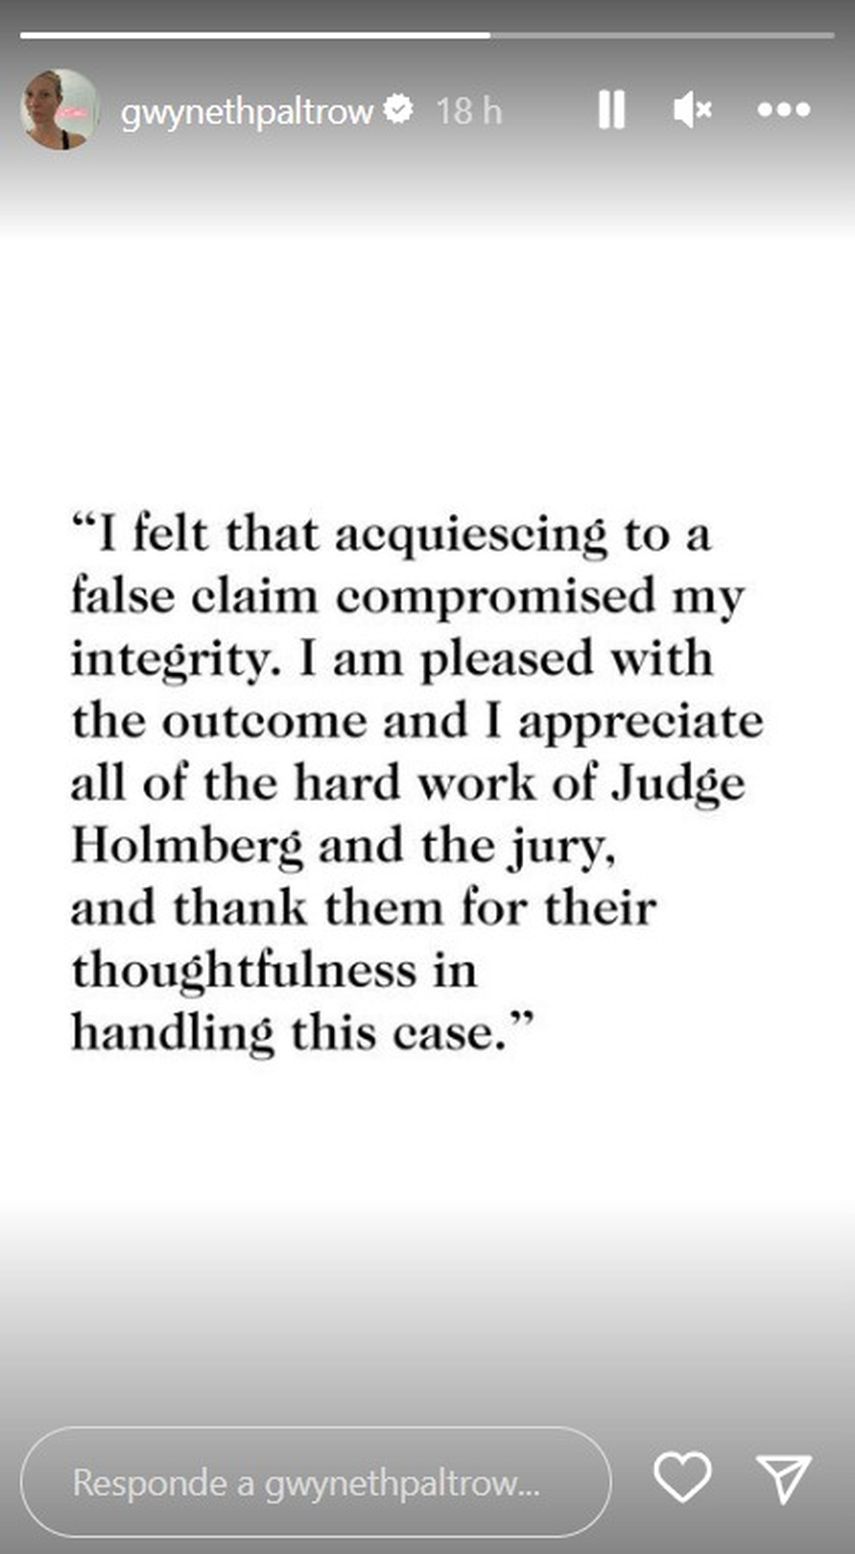 “Sentí que aceptar una afirmación falsa comprometía mi integridad”, publicó Paltrow a sus 8,3 millones de seguidores de Instagram después del veredicto.